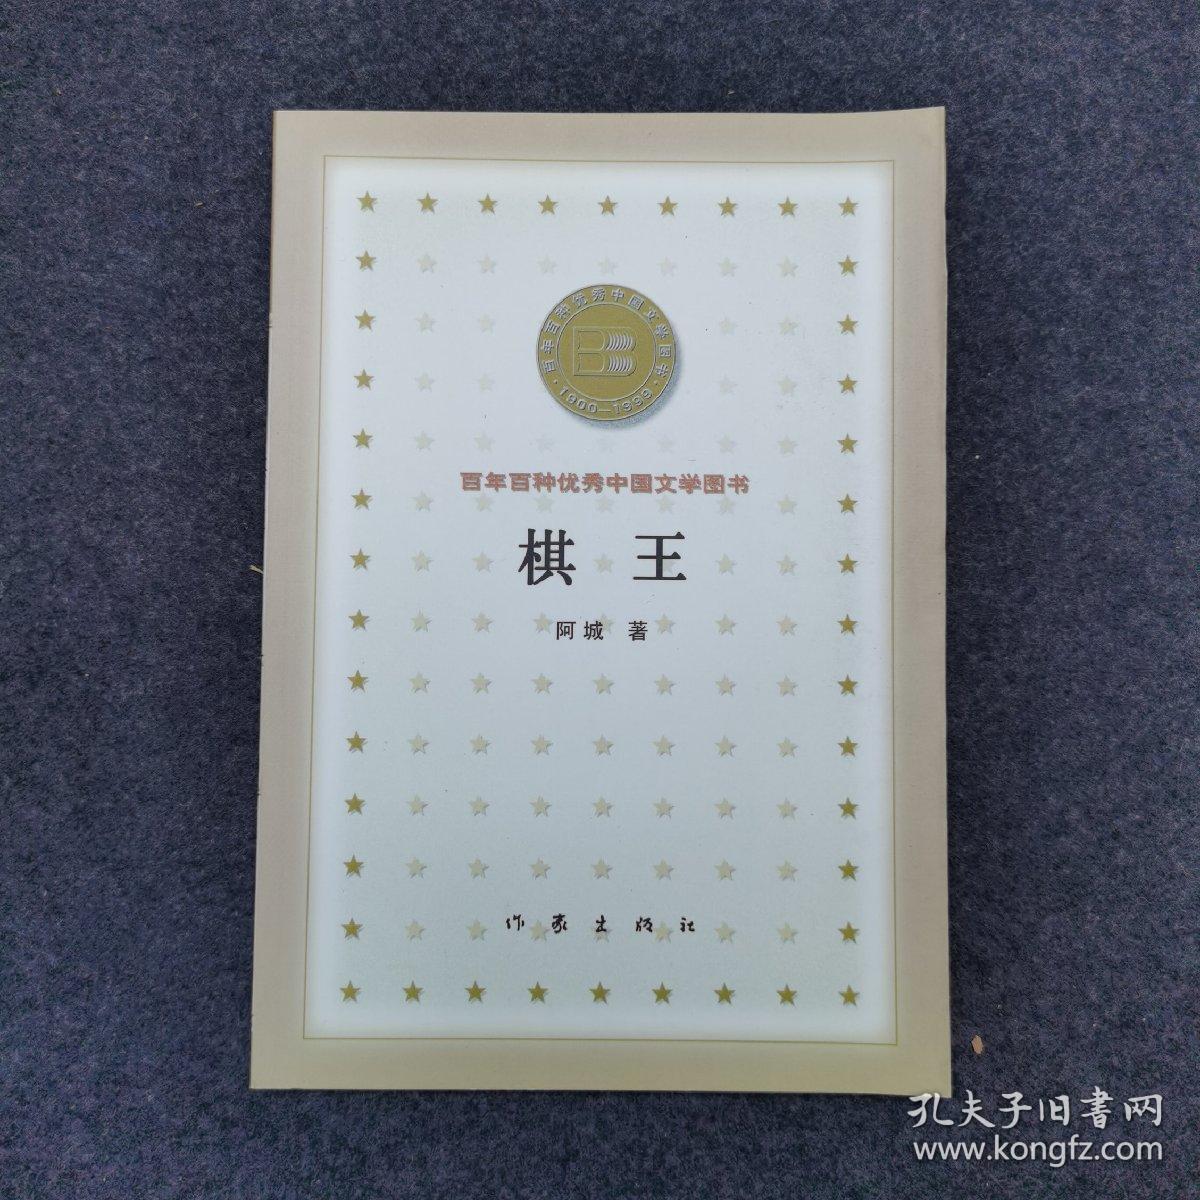 棋王 百年百种优秀中国文学图书